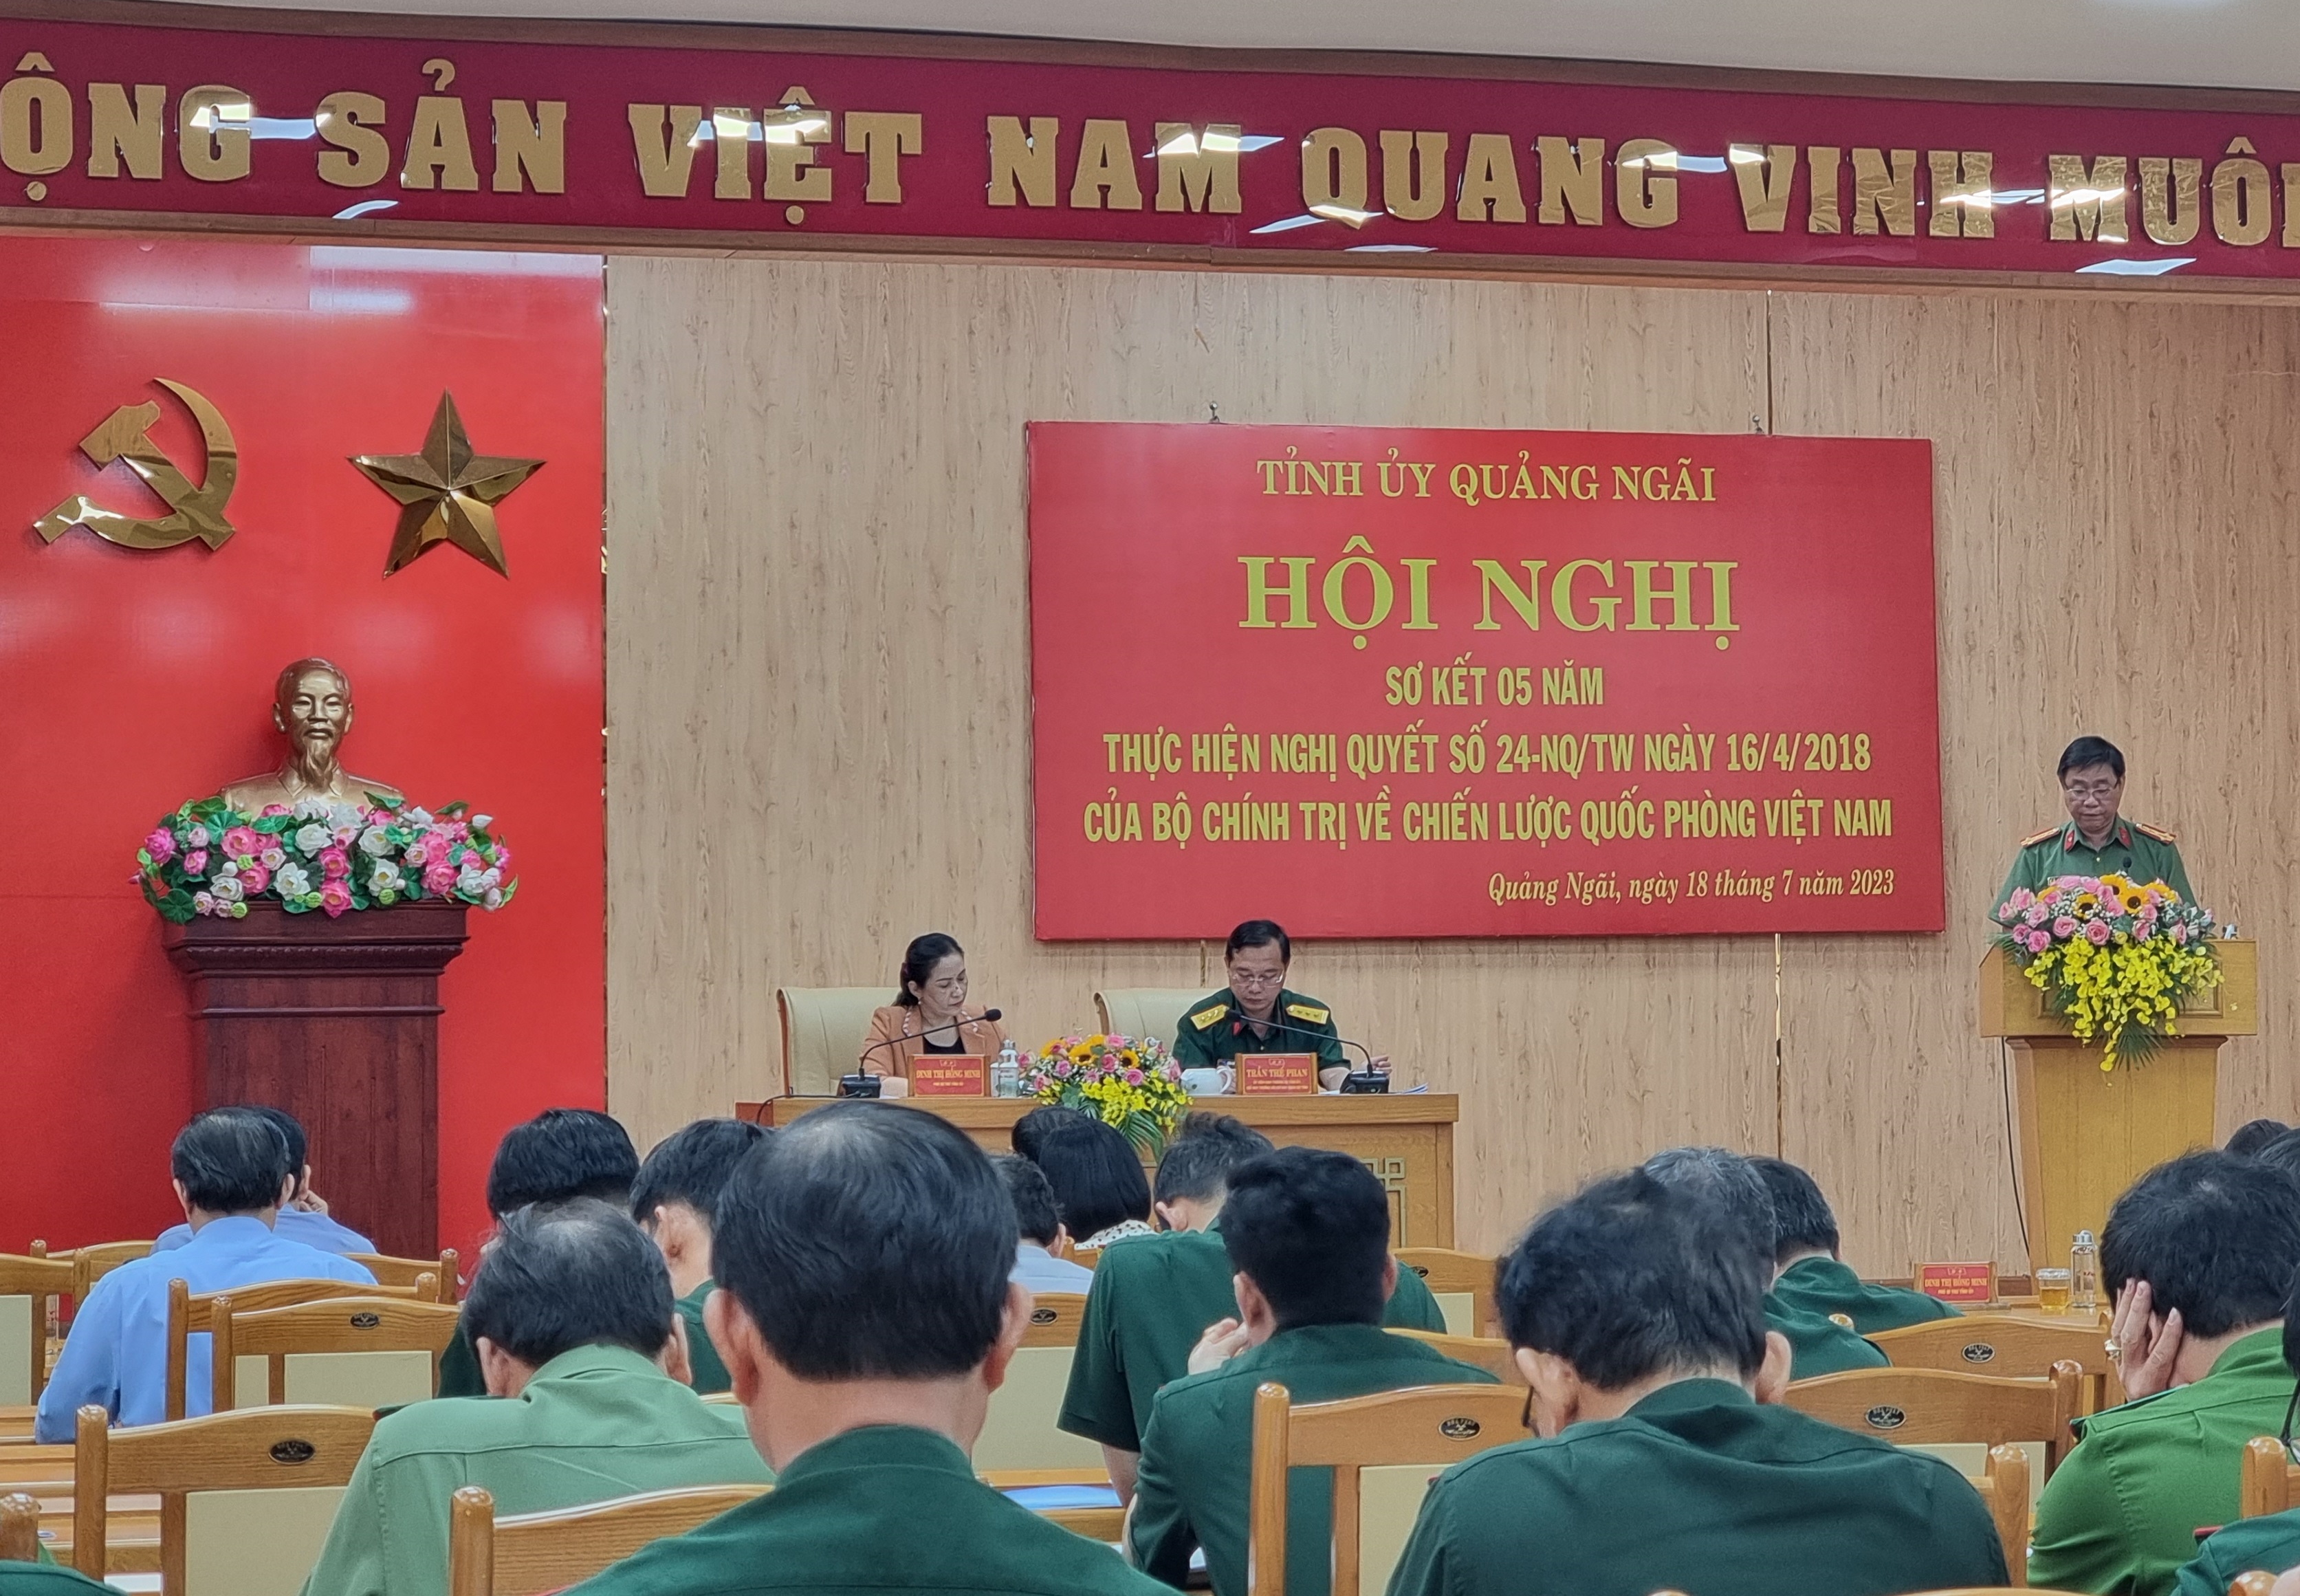 Công an tỉnh Quảng Ngãi góp phần quan trọng thực hiện thắng lợi Chiến lược Quốc phòng Việt Nam